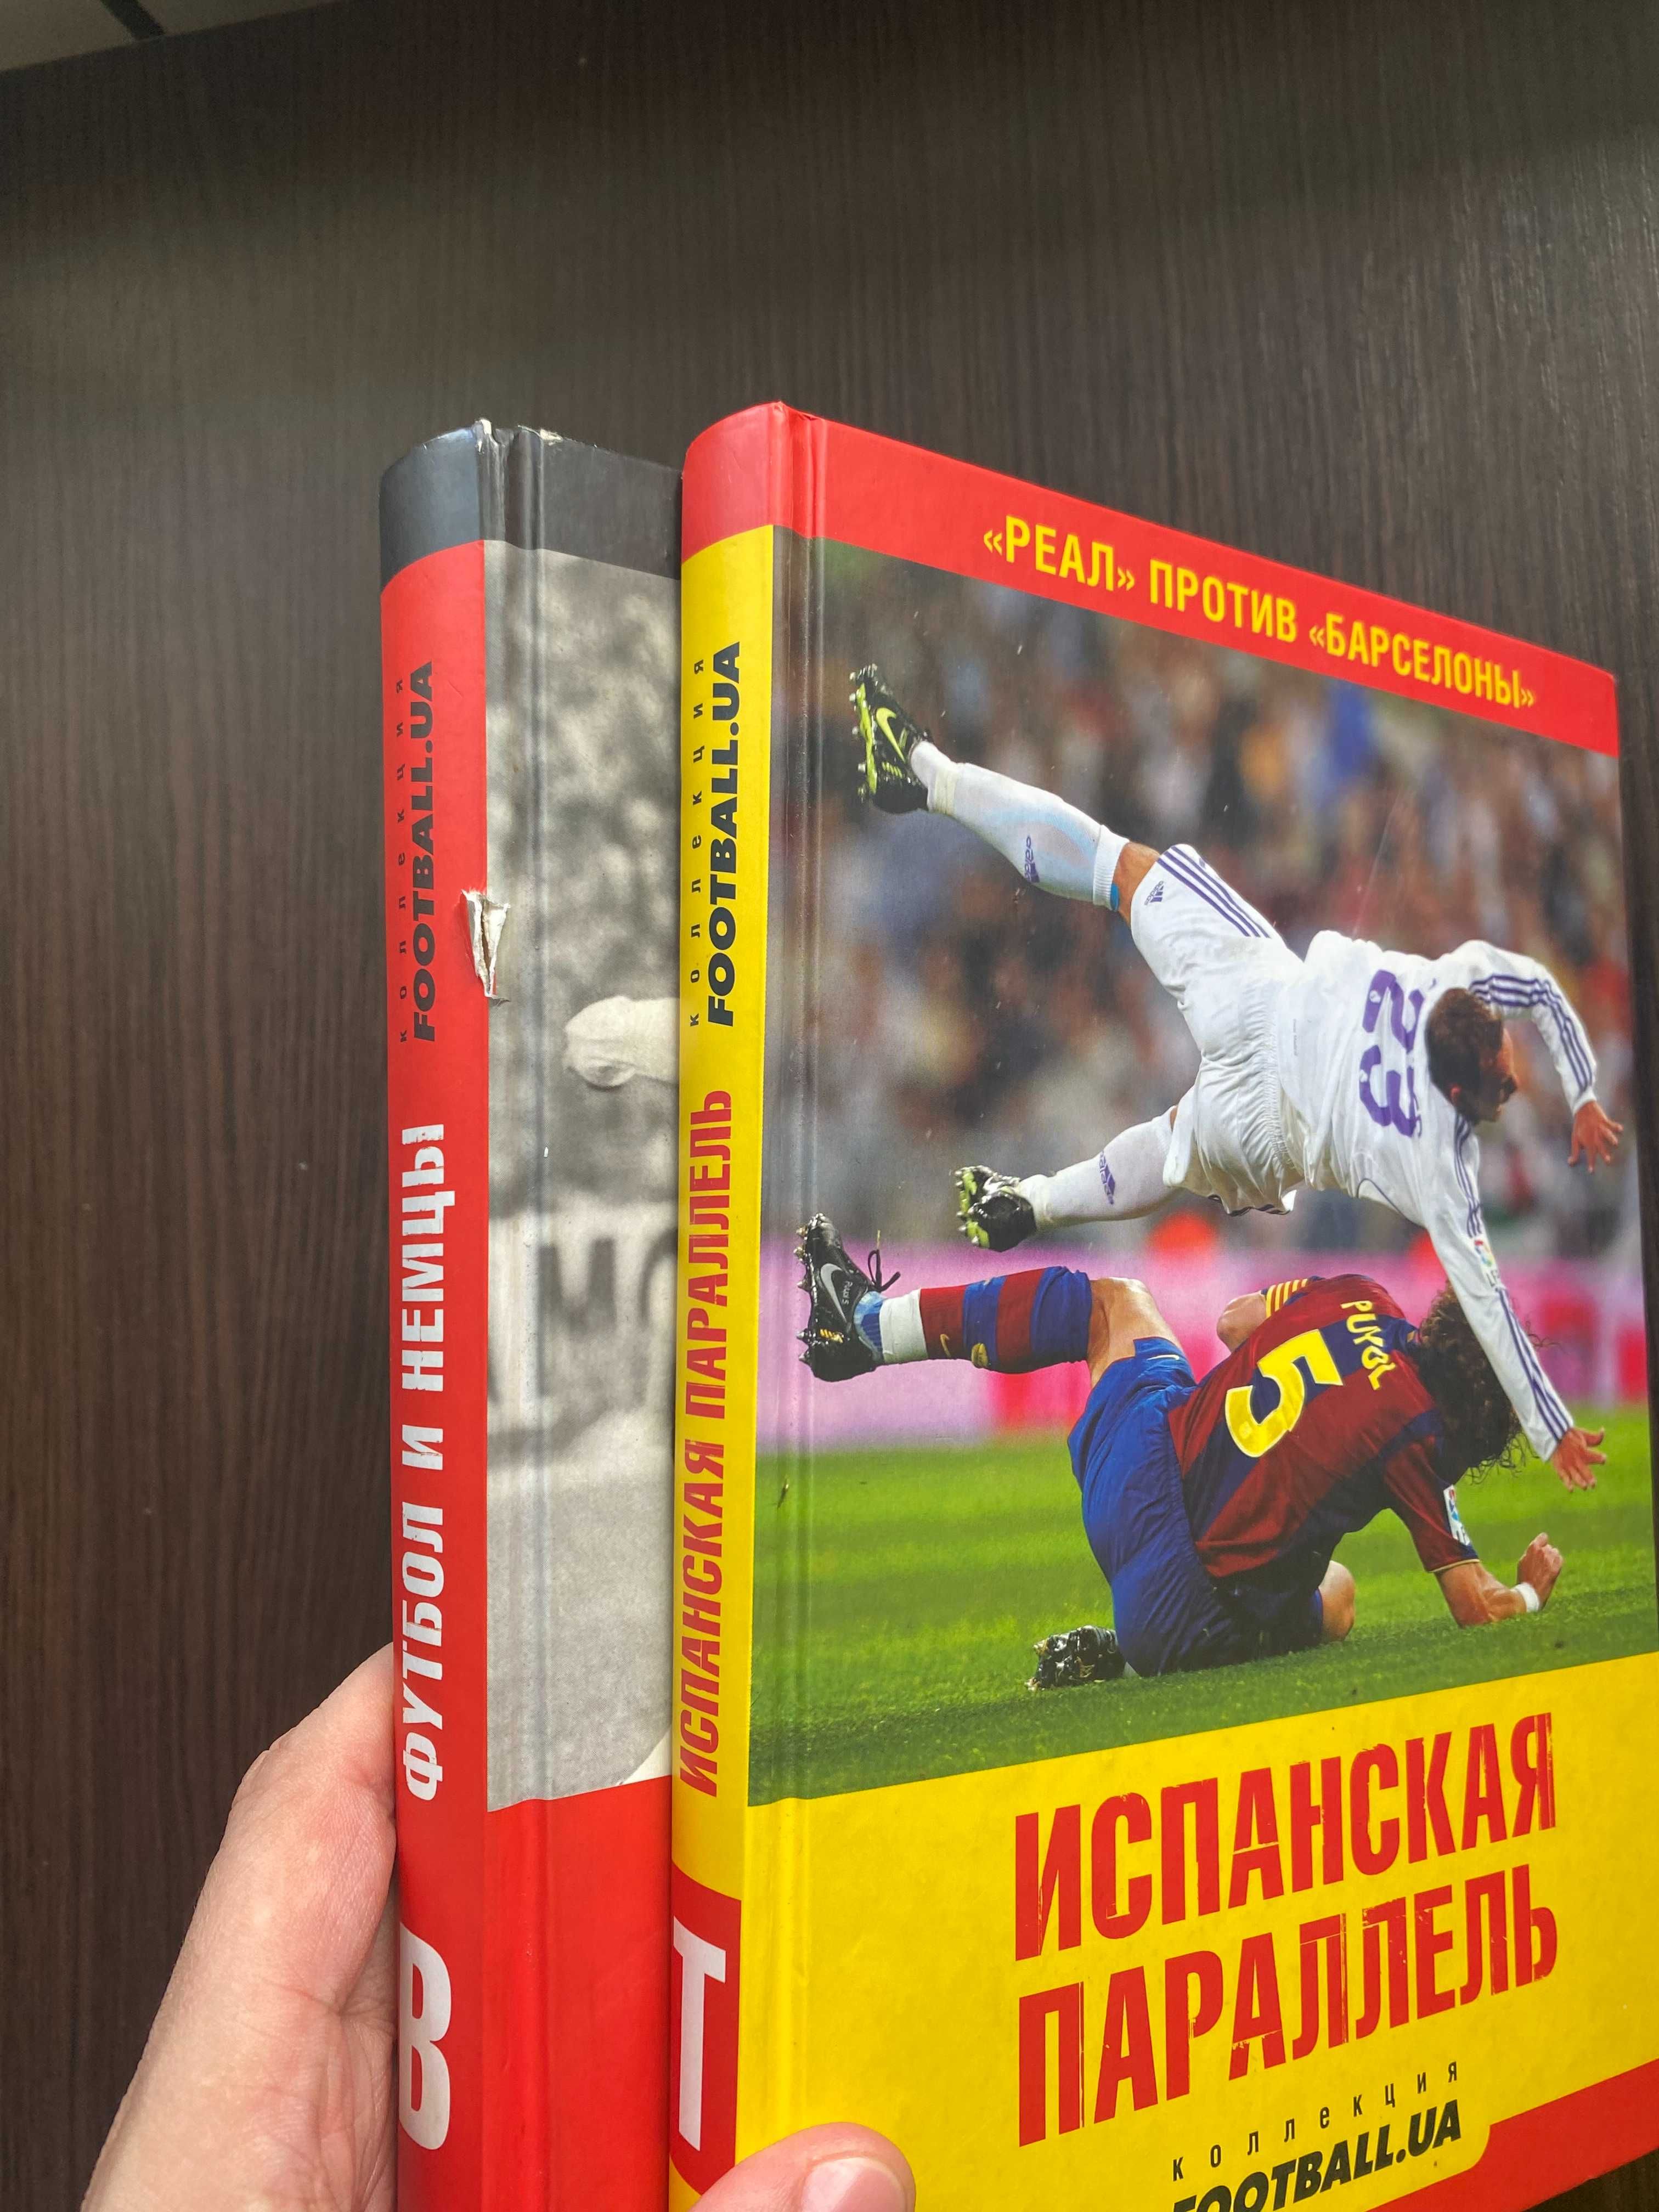 Книги "Футбол и немцы", "Испанская параллель" (Реал - Барселона)